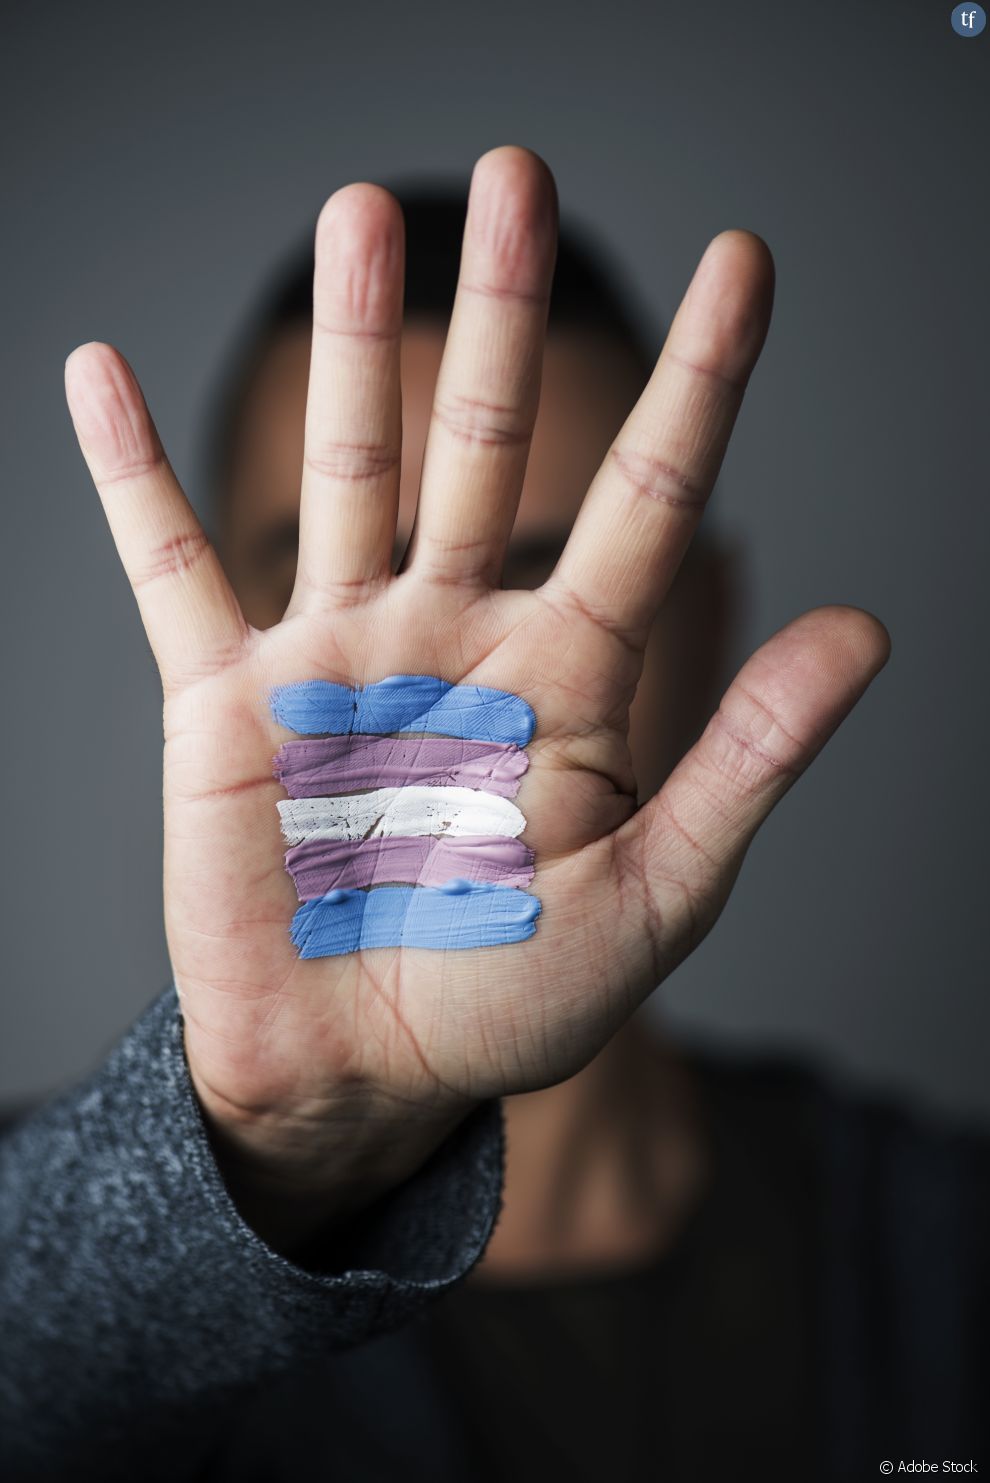 Un symbole transgenre peint sur une main